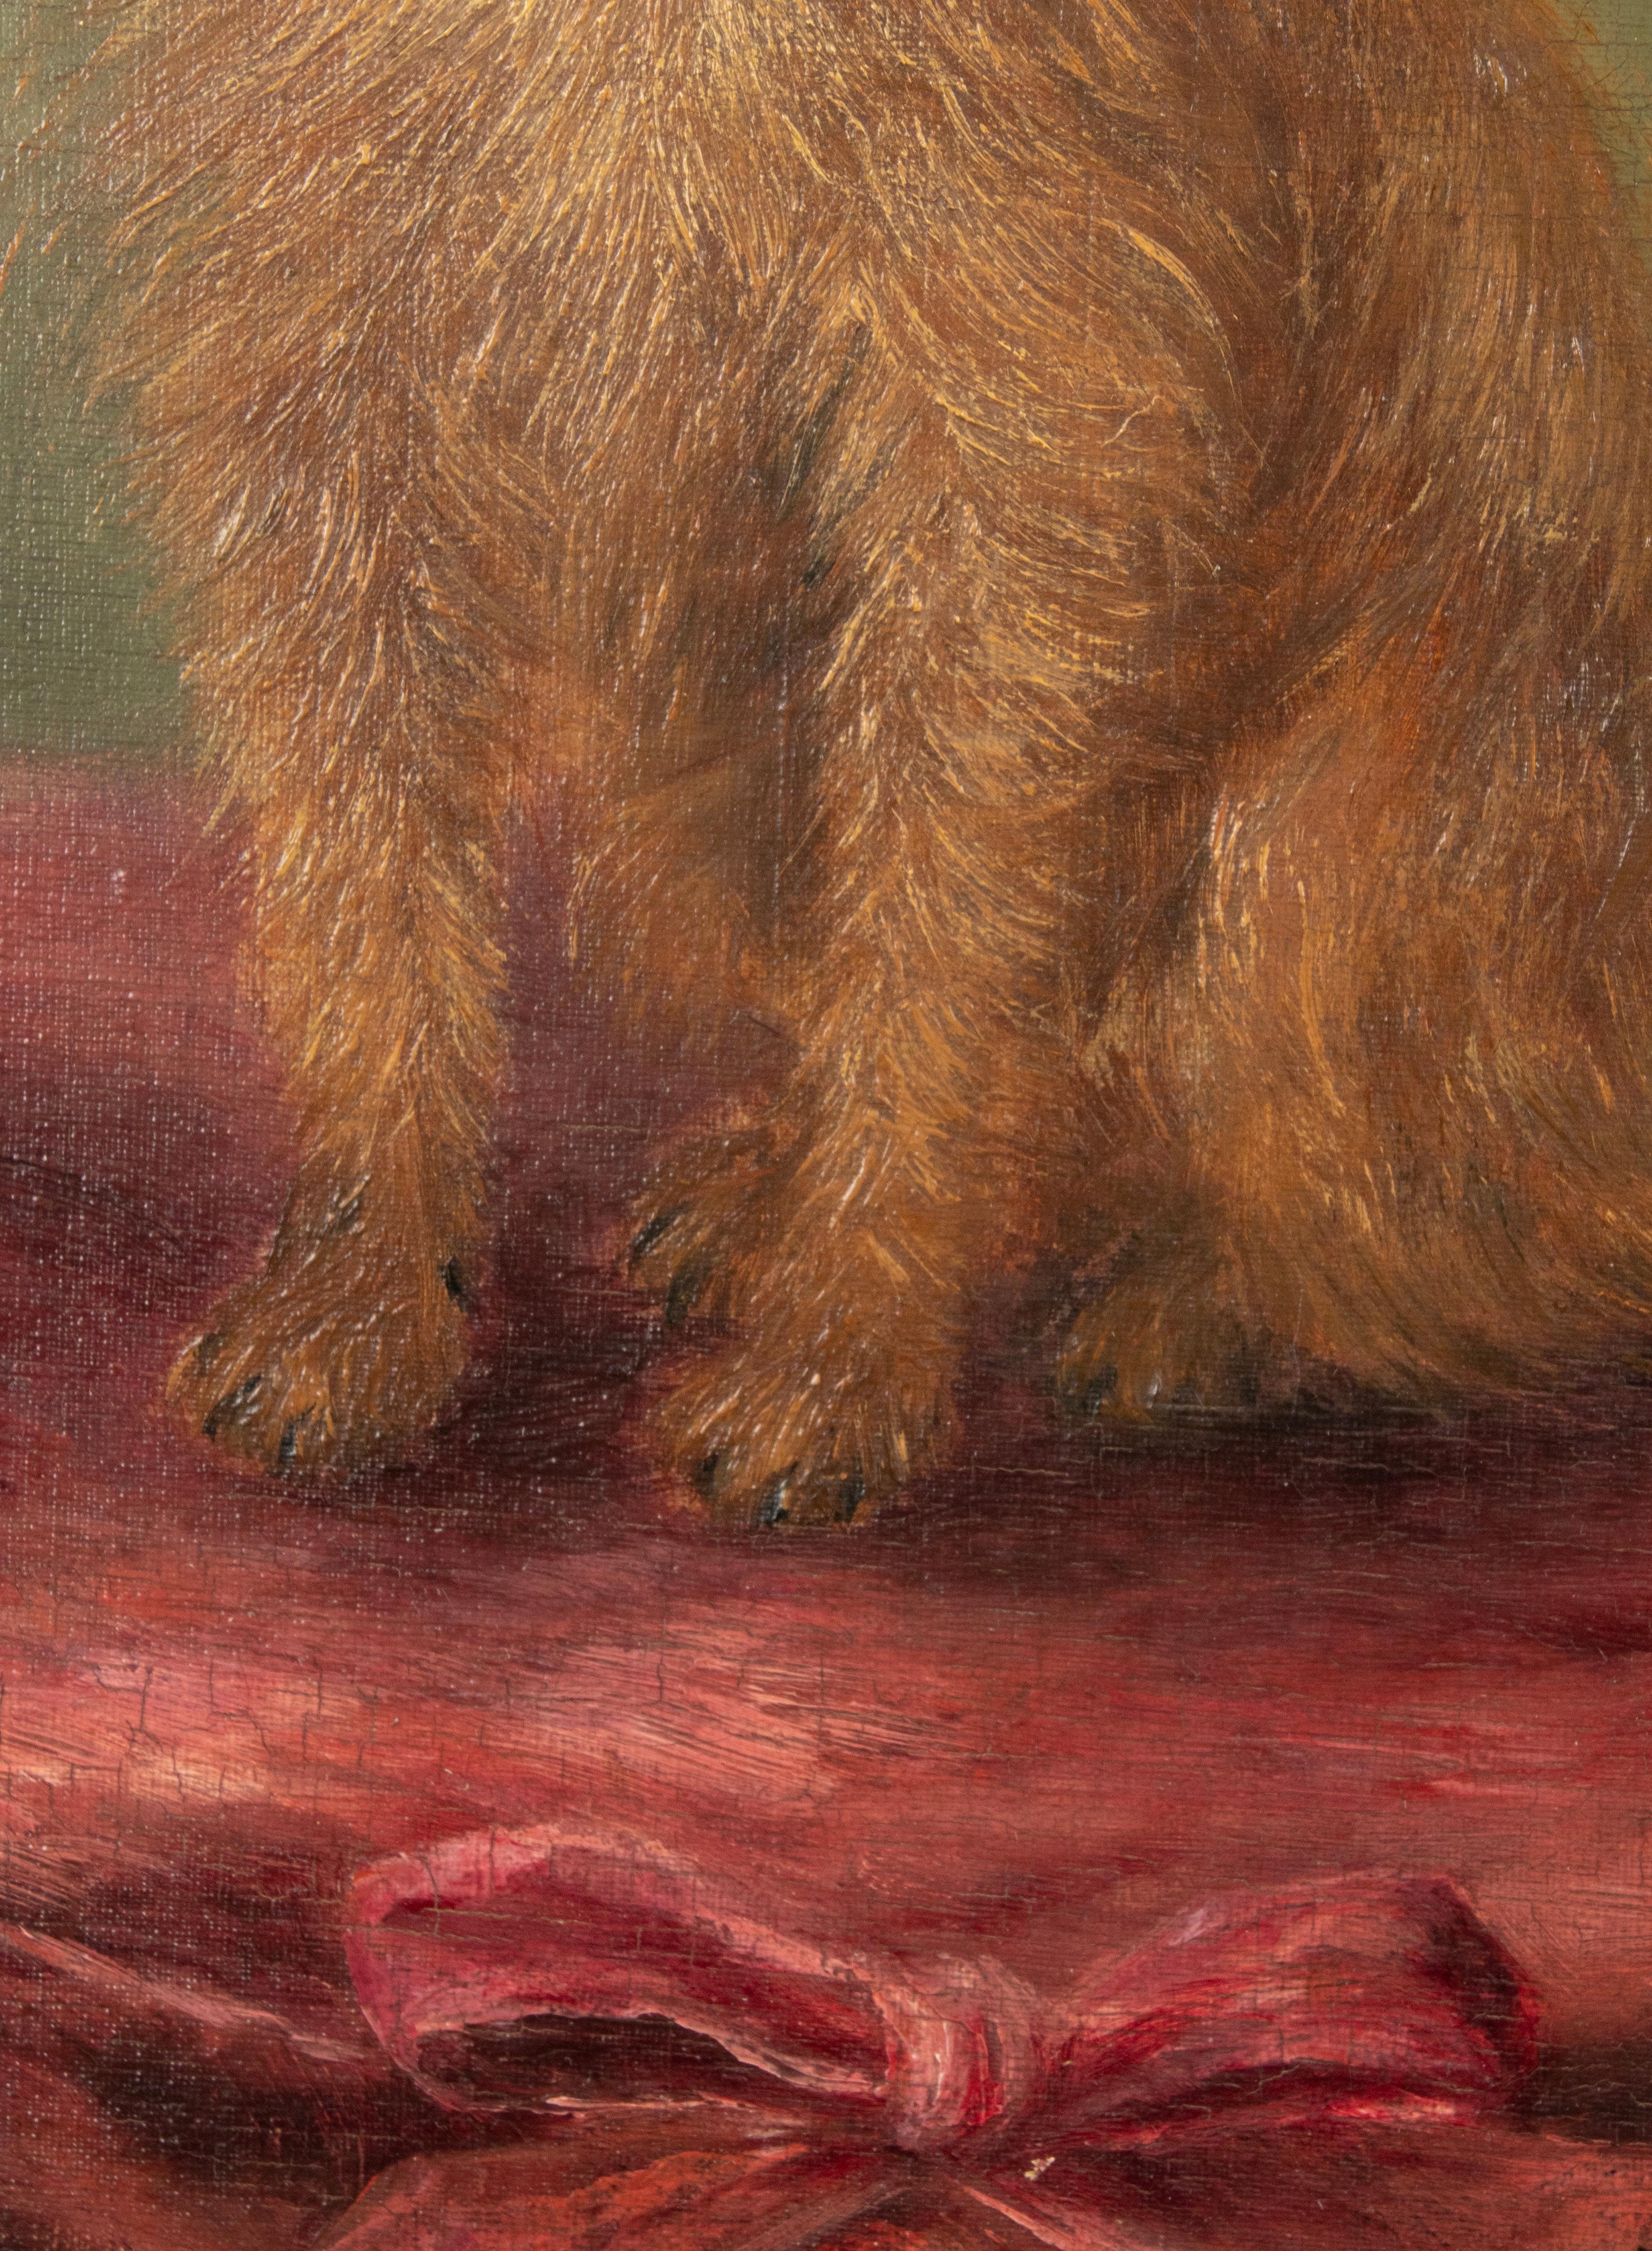 19th Century Portrait of a Griffon Bruxellois Dog Named Mouche Cora, Zélia Klerx 1